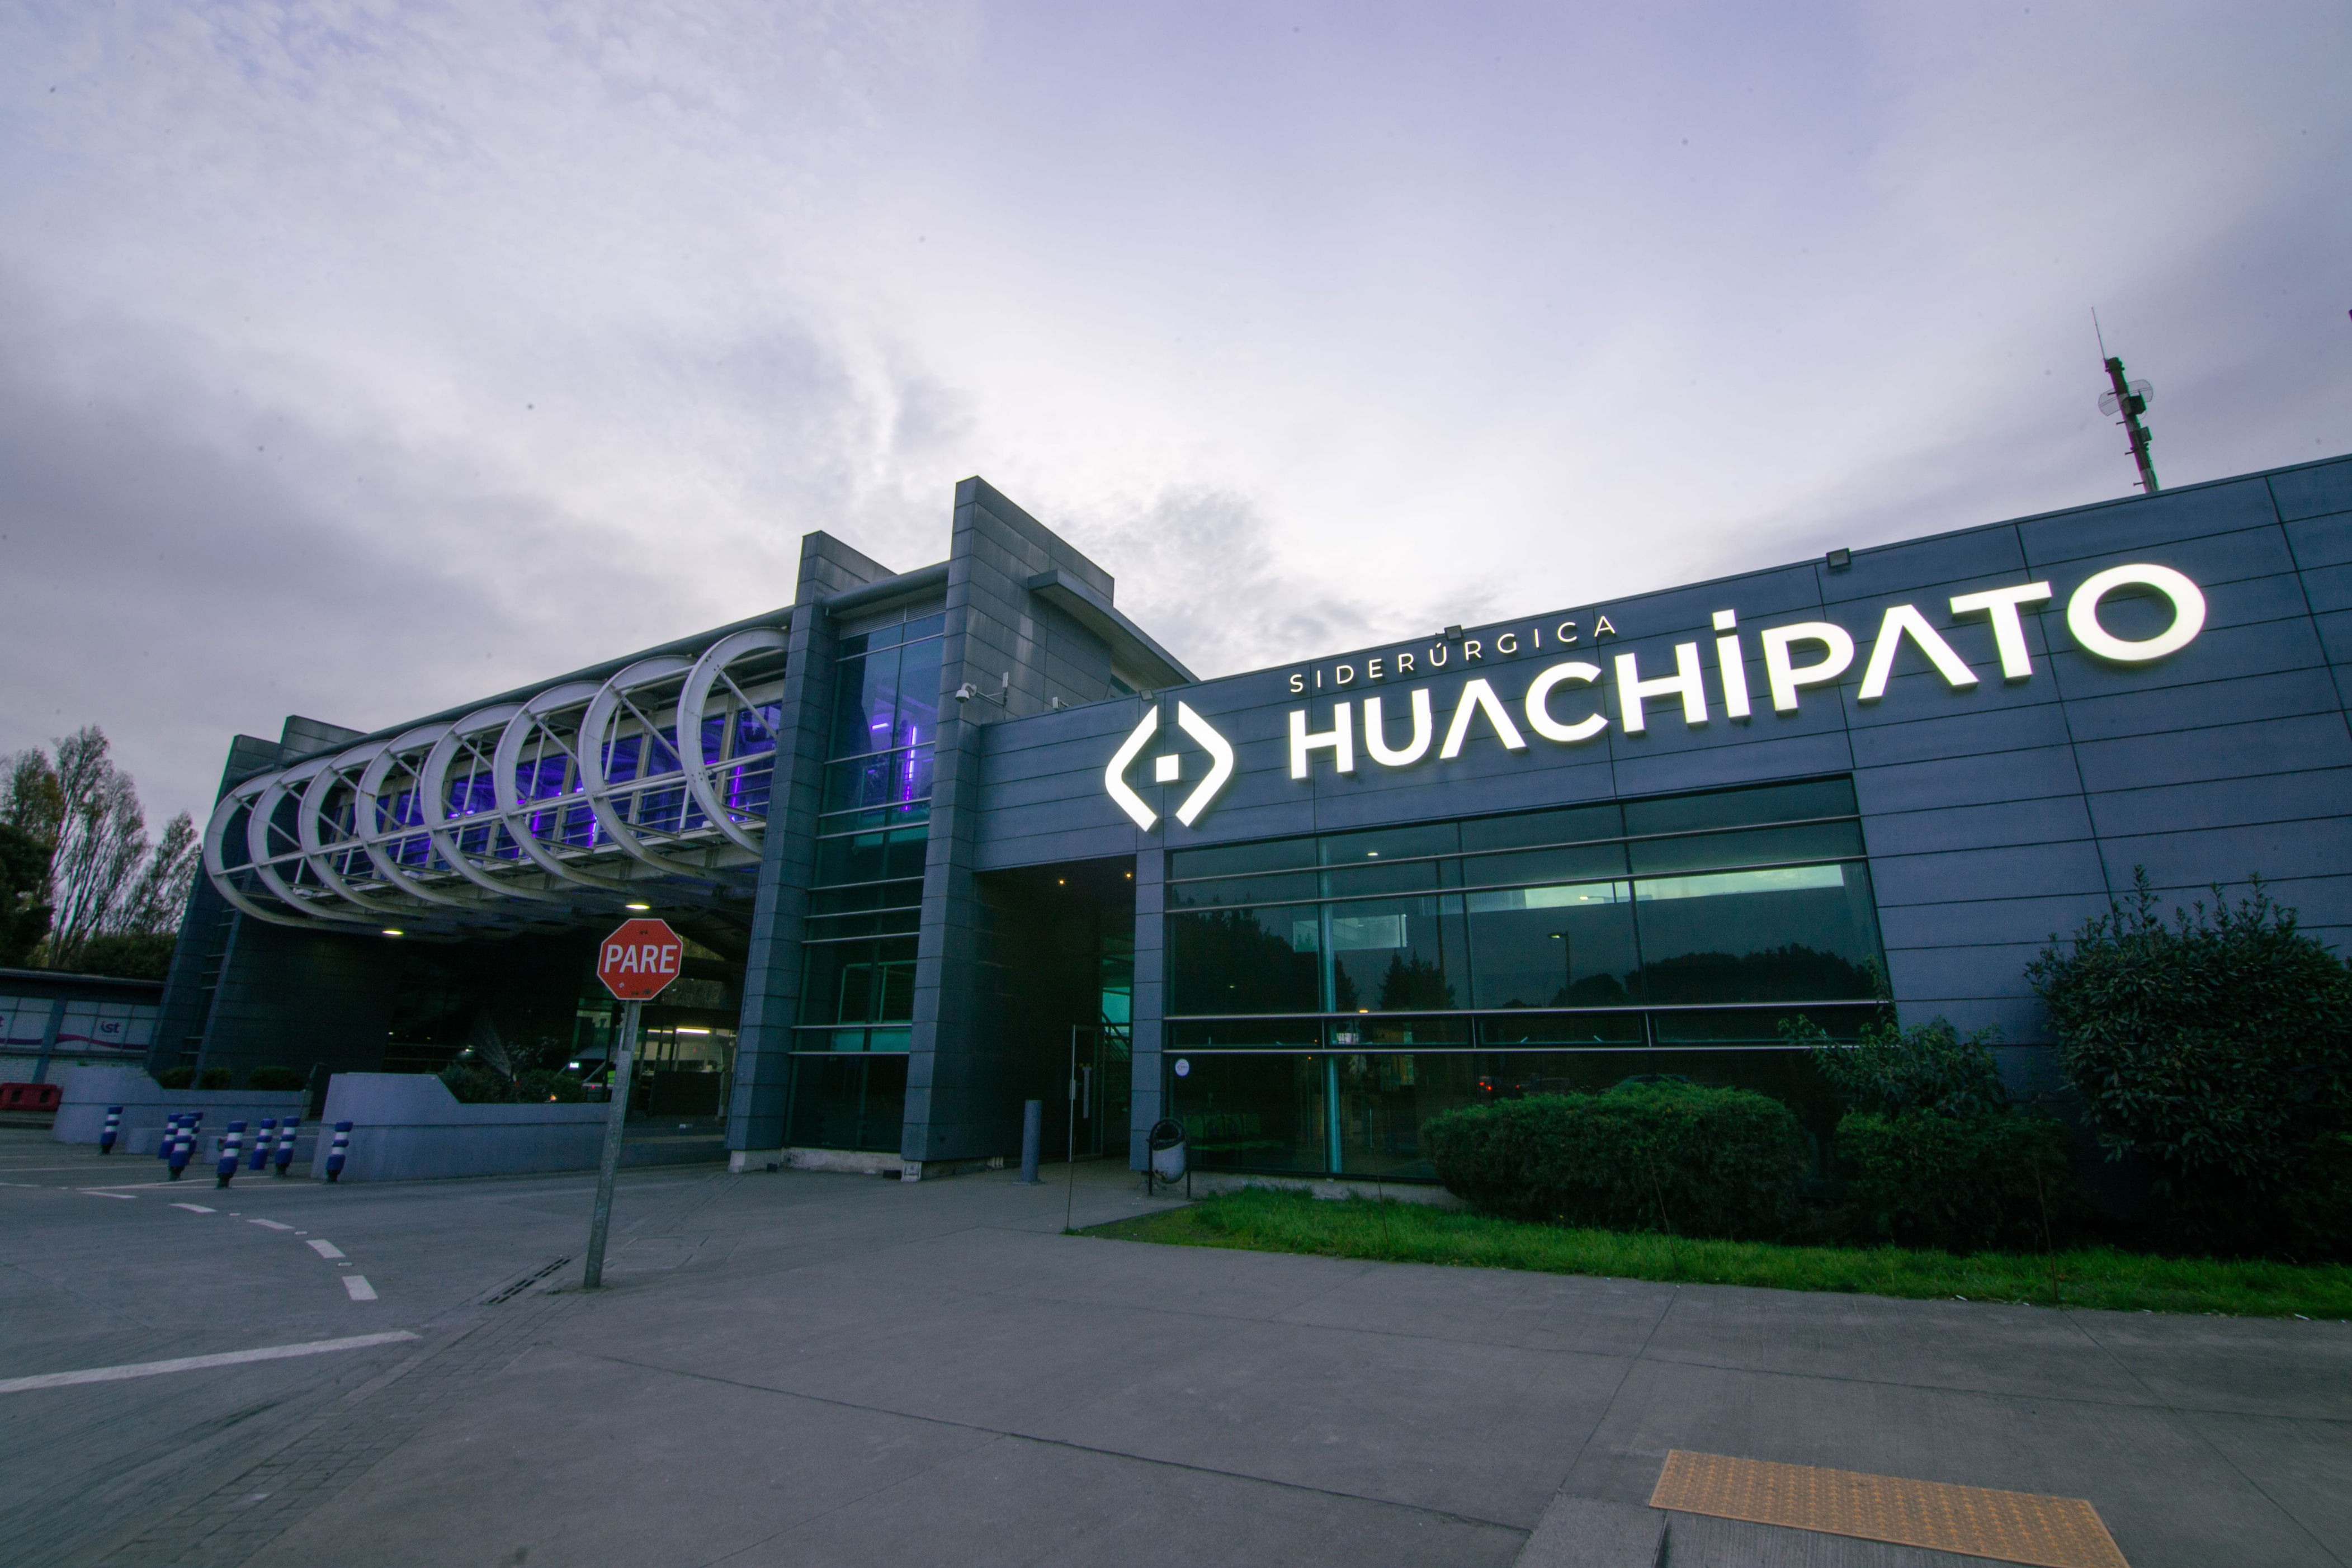 directorio de huachipato revierte suspensión de operaciones tras aumento de sobretasa a acero chino